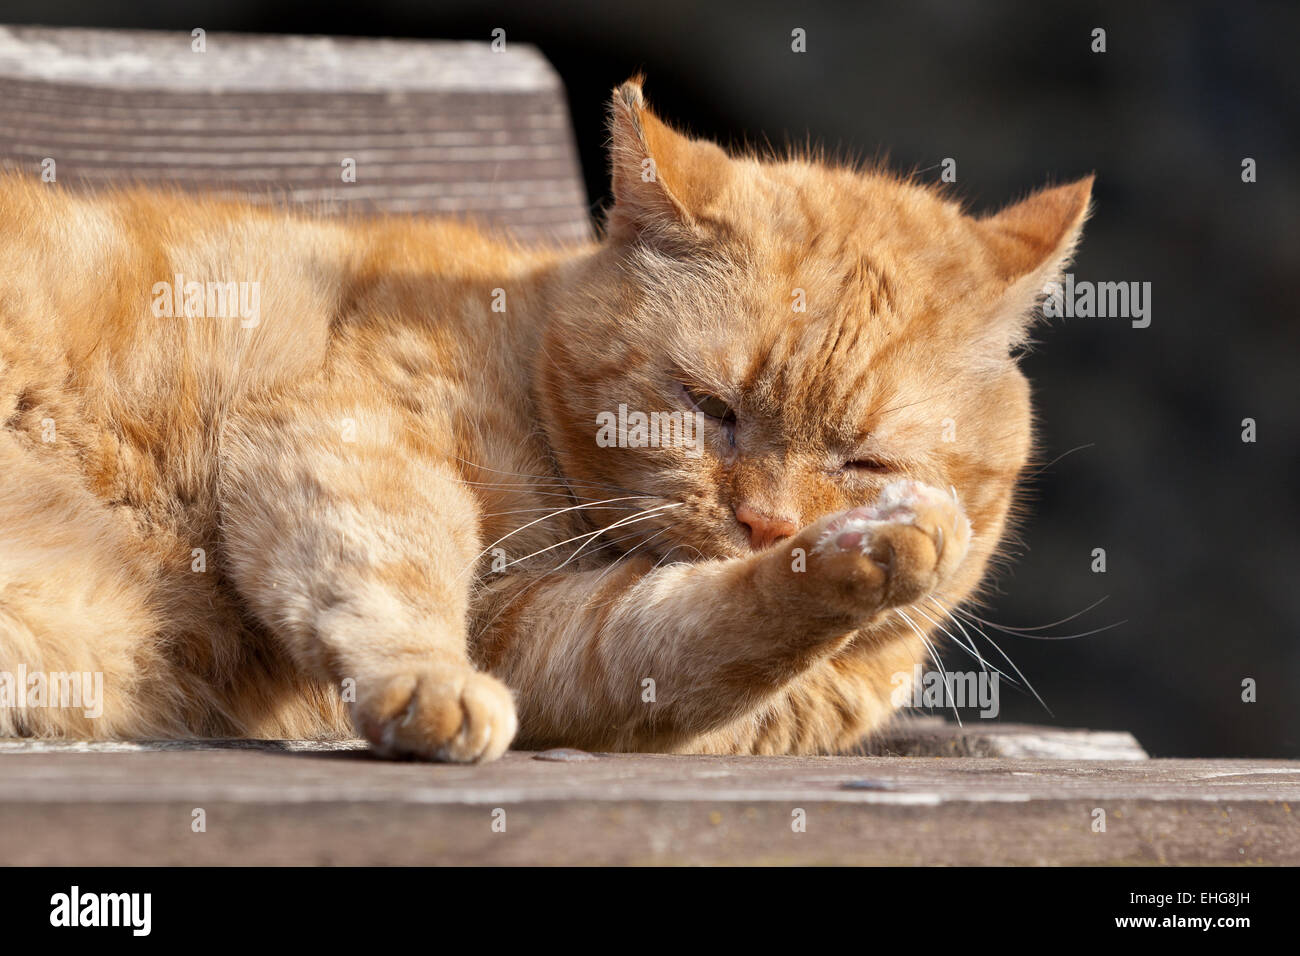 cat garfield Stock Photo